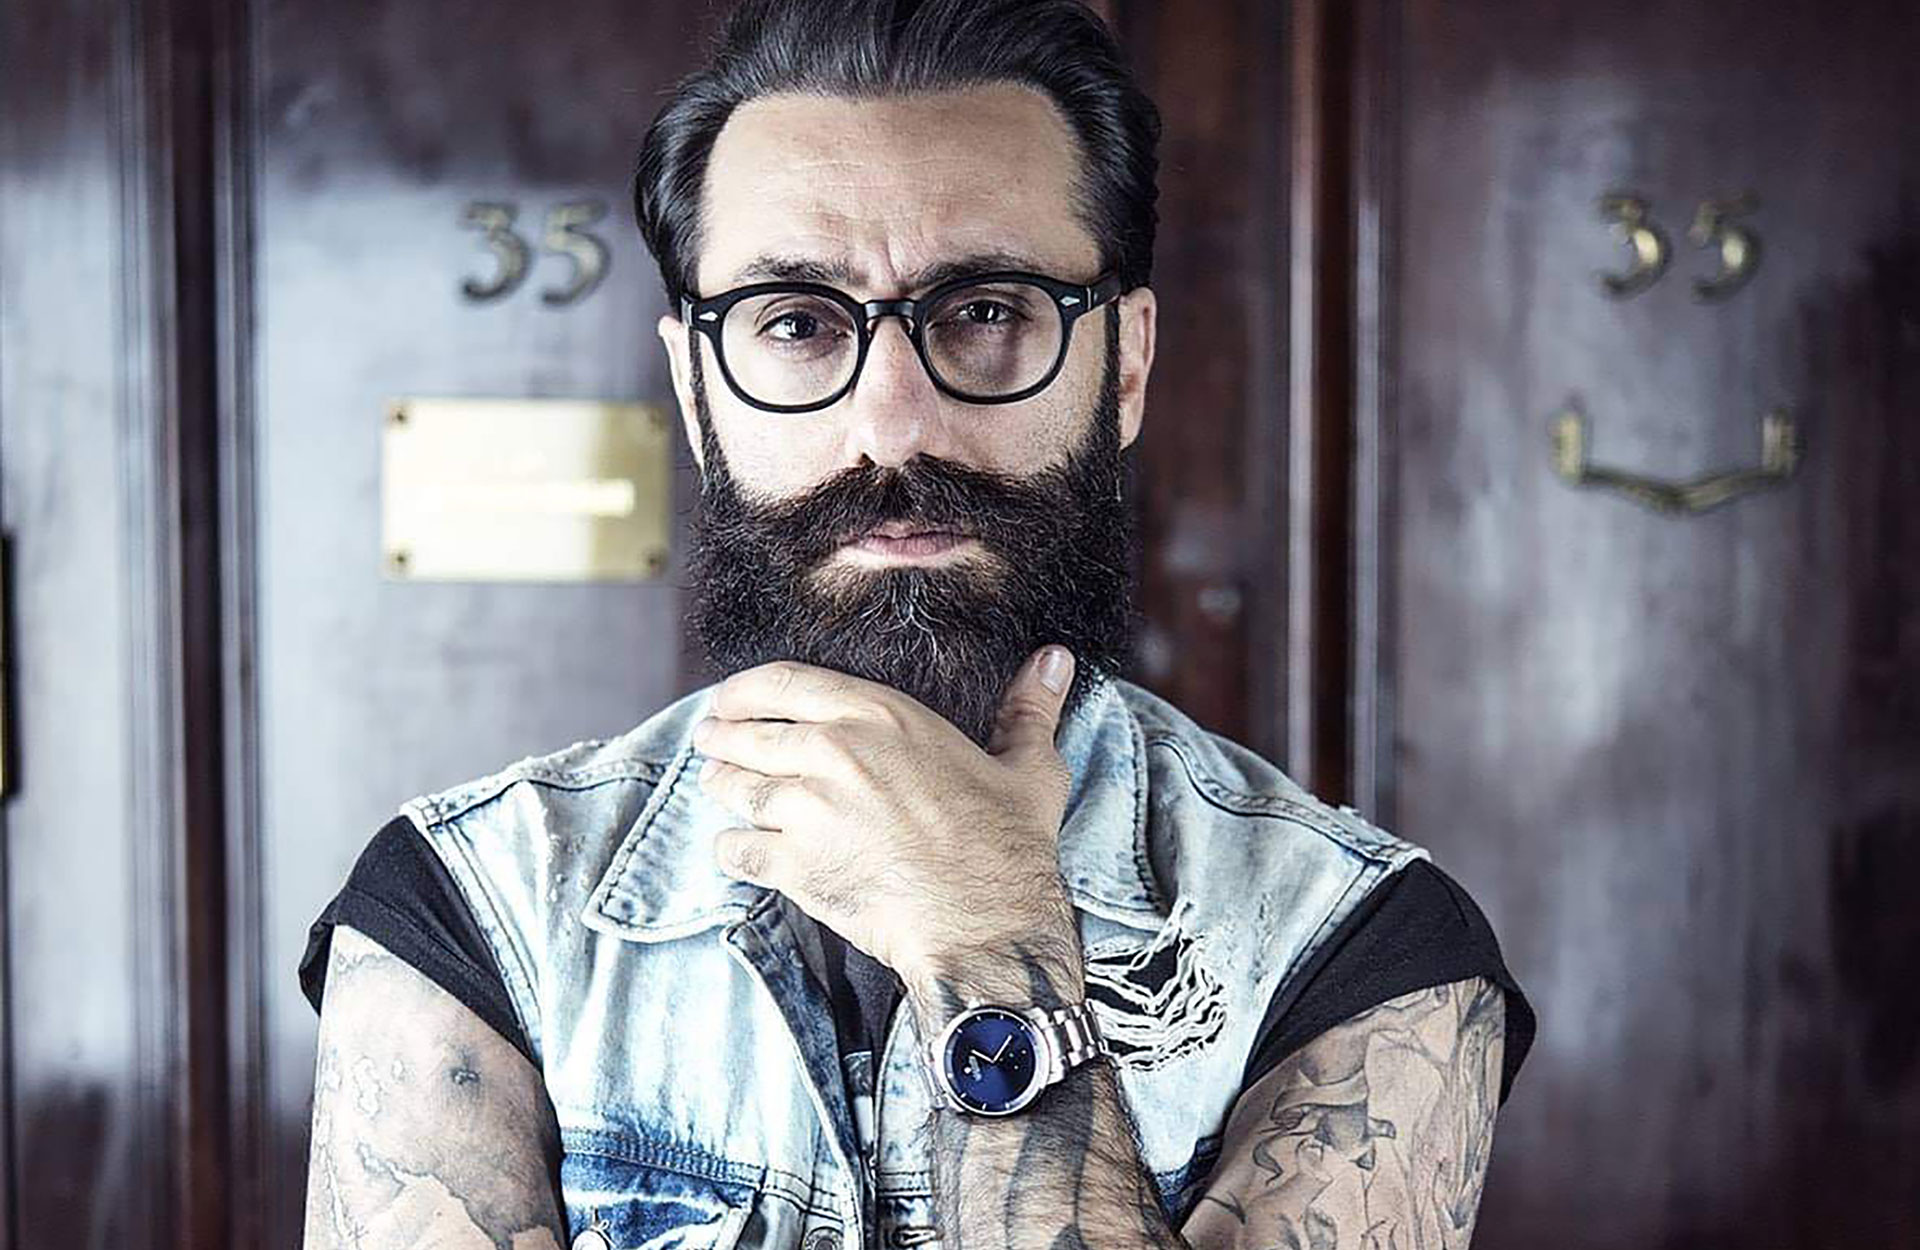 Iman Khalaf - frisyrer og skjeggtips